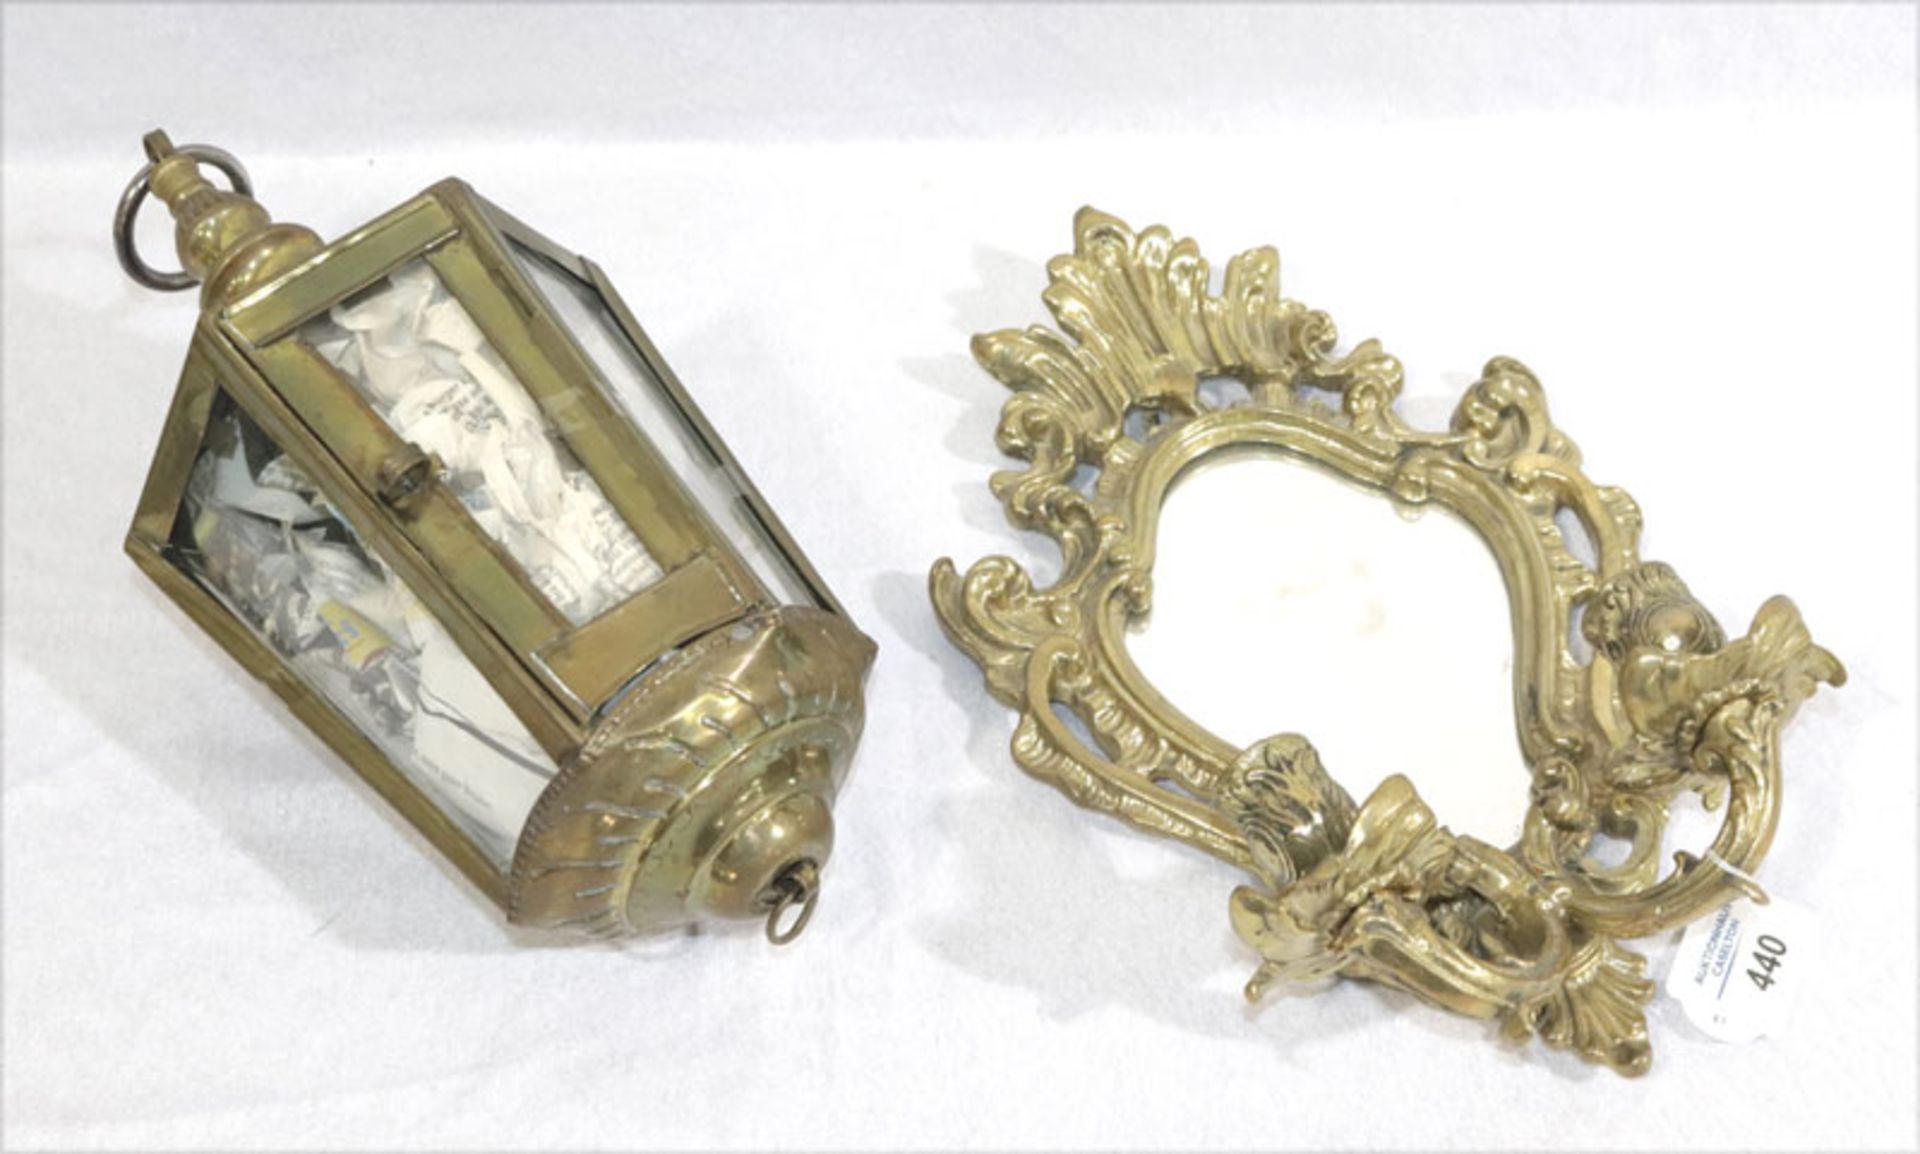 Laterne Messing/verglast, H 33 cm, D 16 cm, Gläser locker, Alters-und Gebrauchsspuren, und Messing